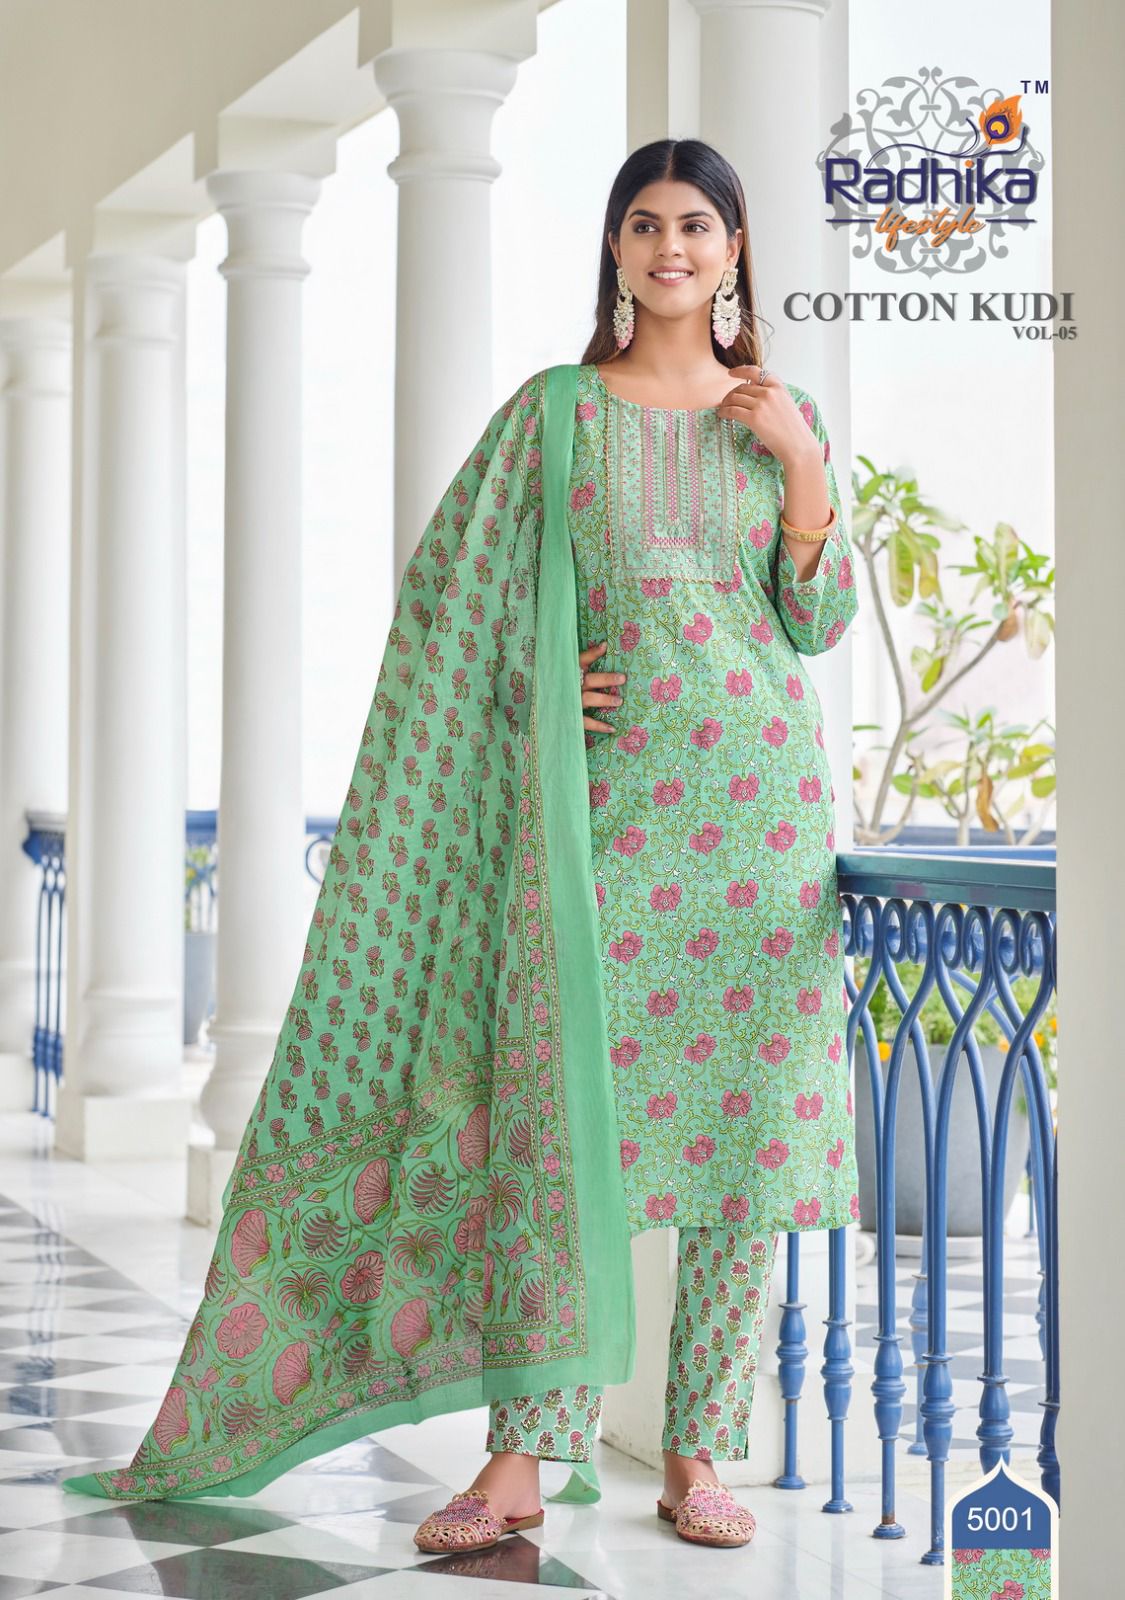 Radhika Cotton Kudi Vol 5 collection 10